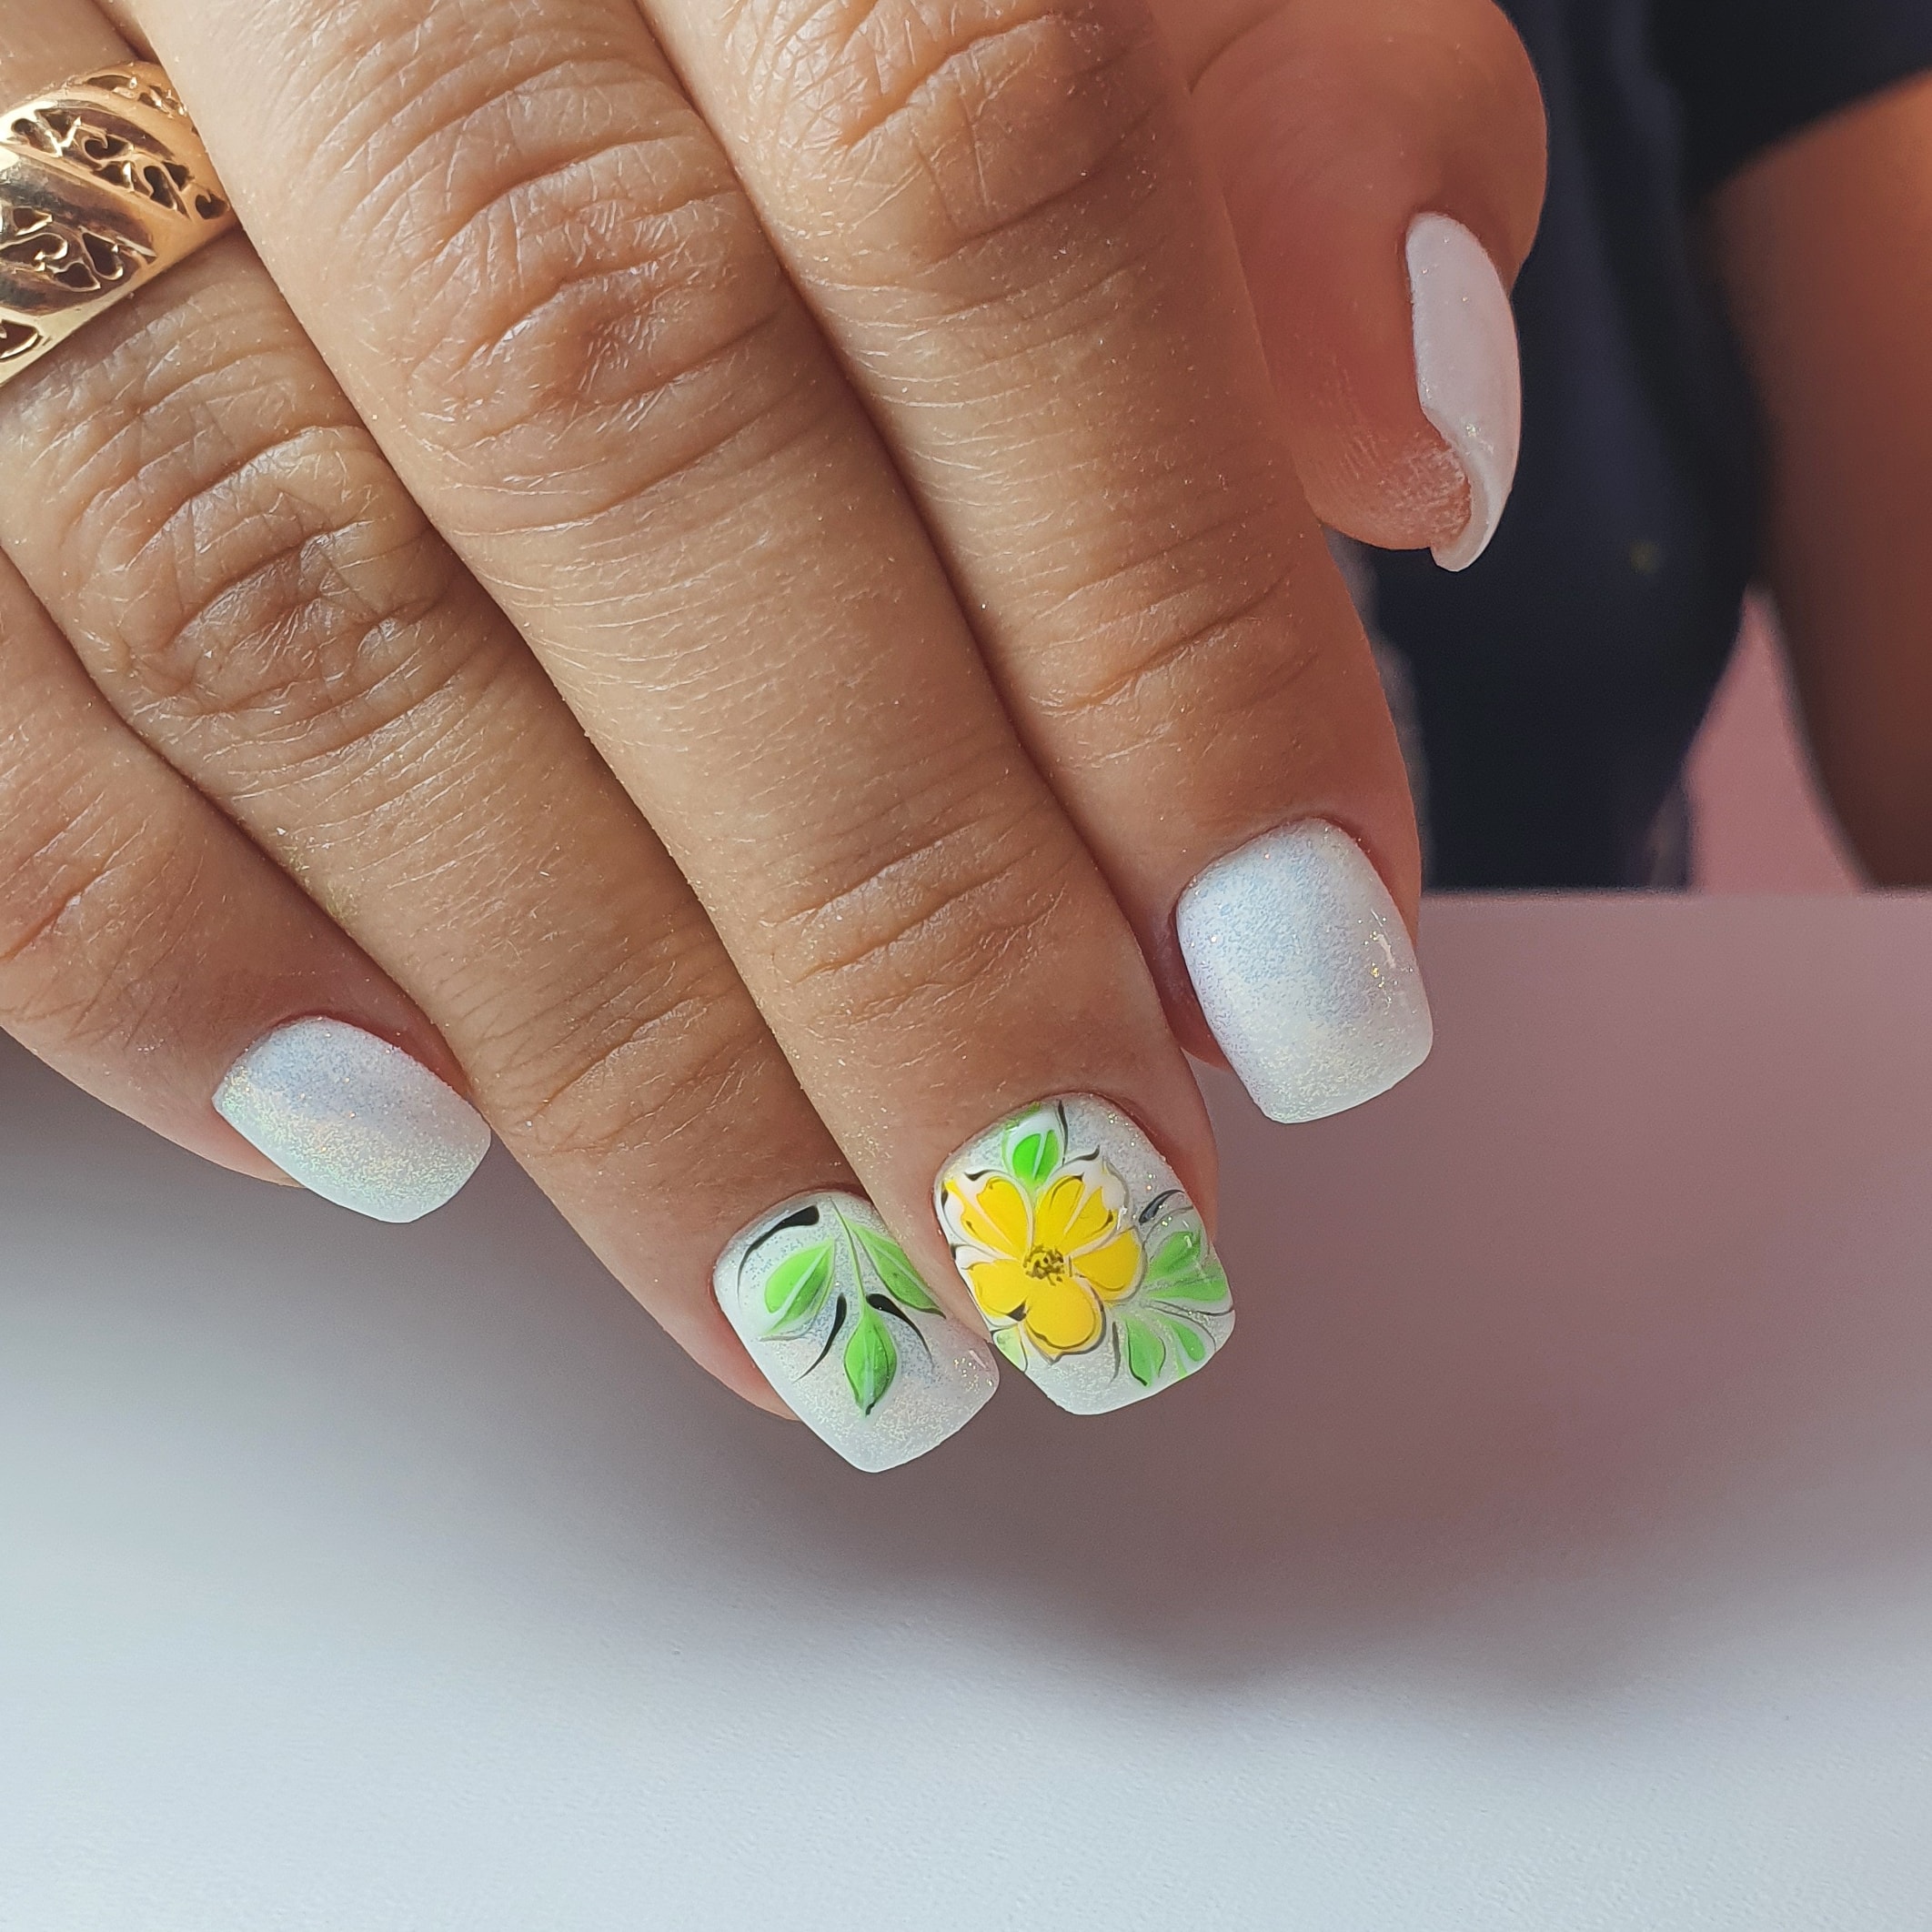 Маникюр с цветочным рисунком в белом цвете на короткие ногти.